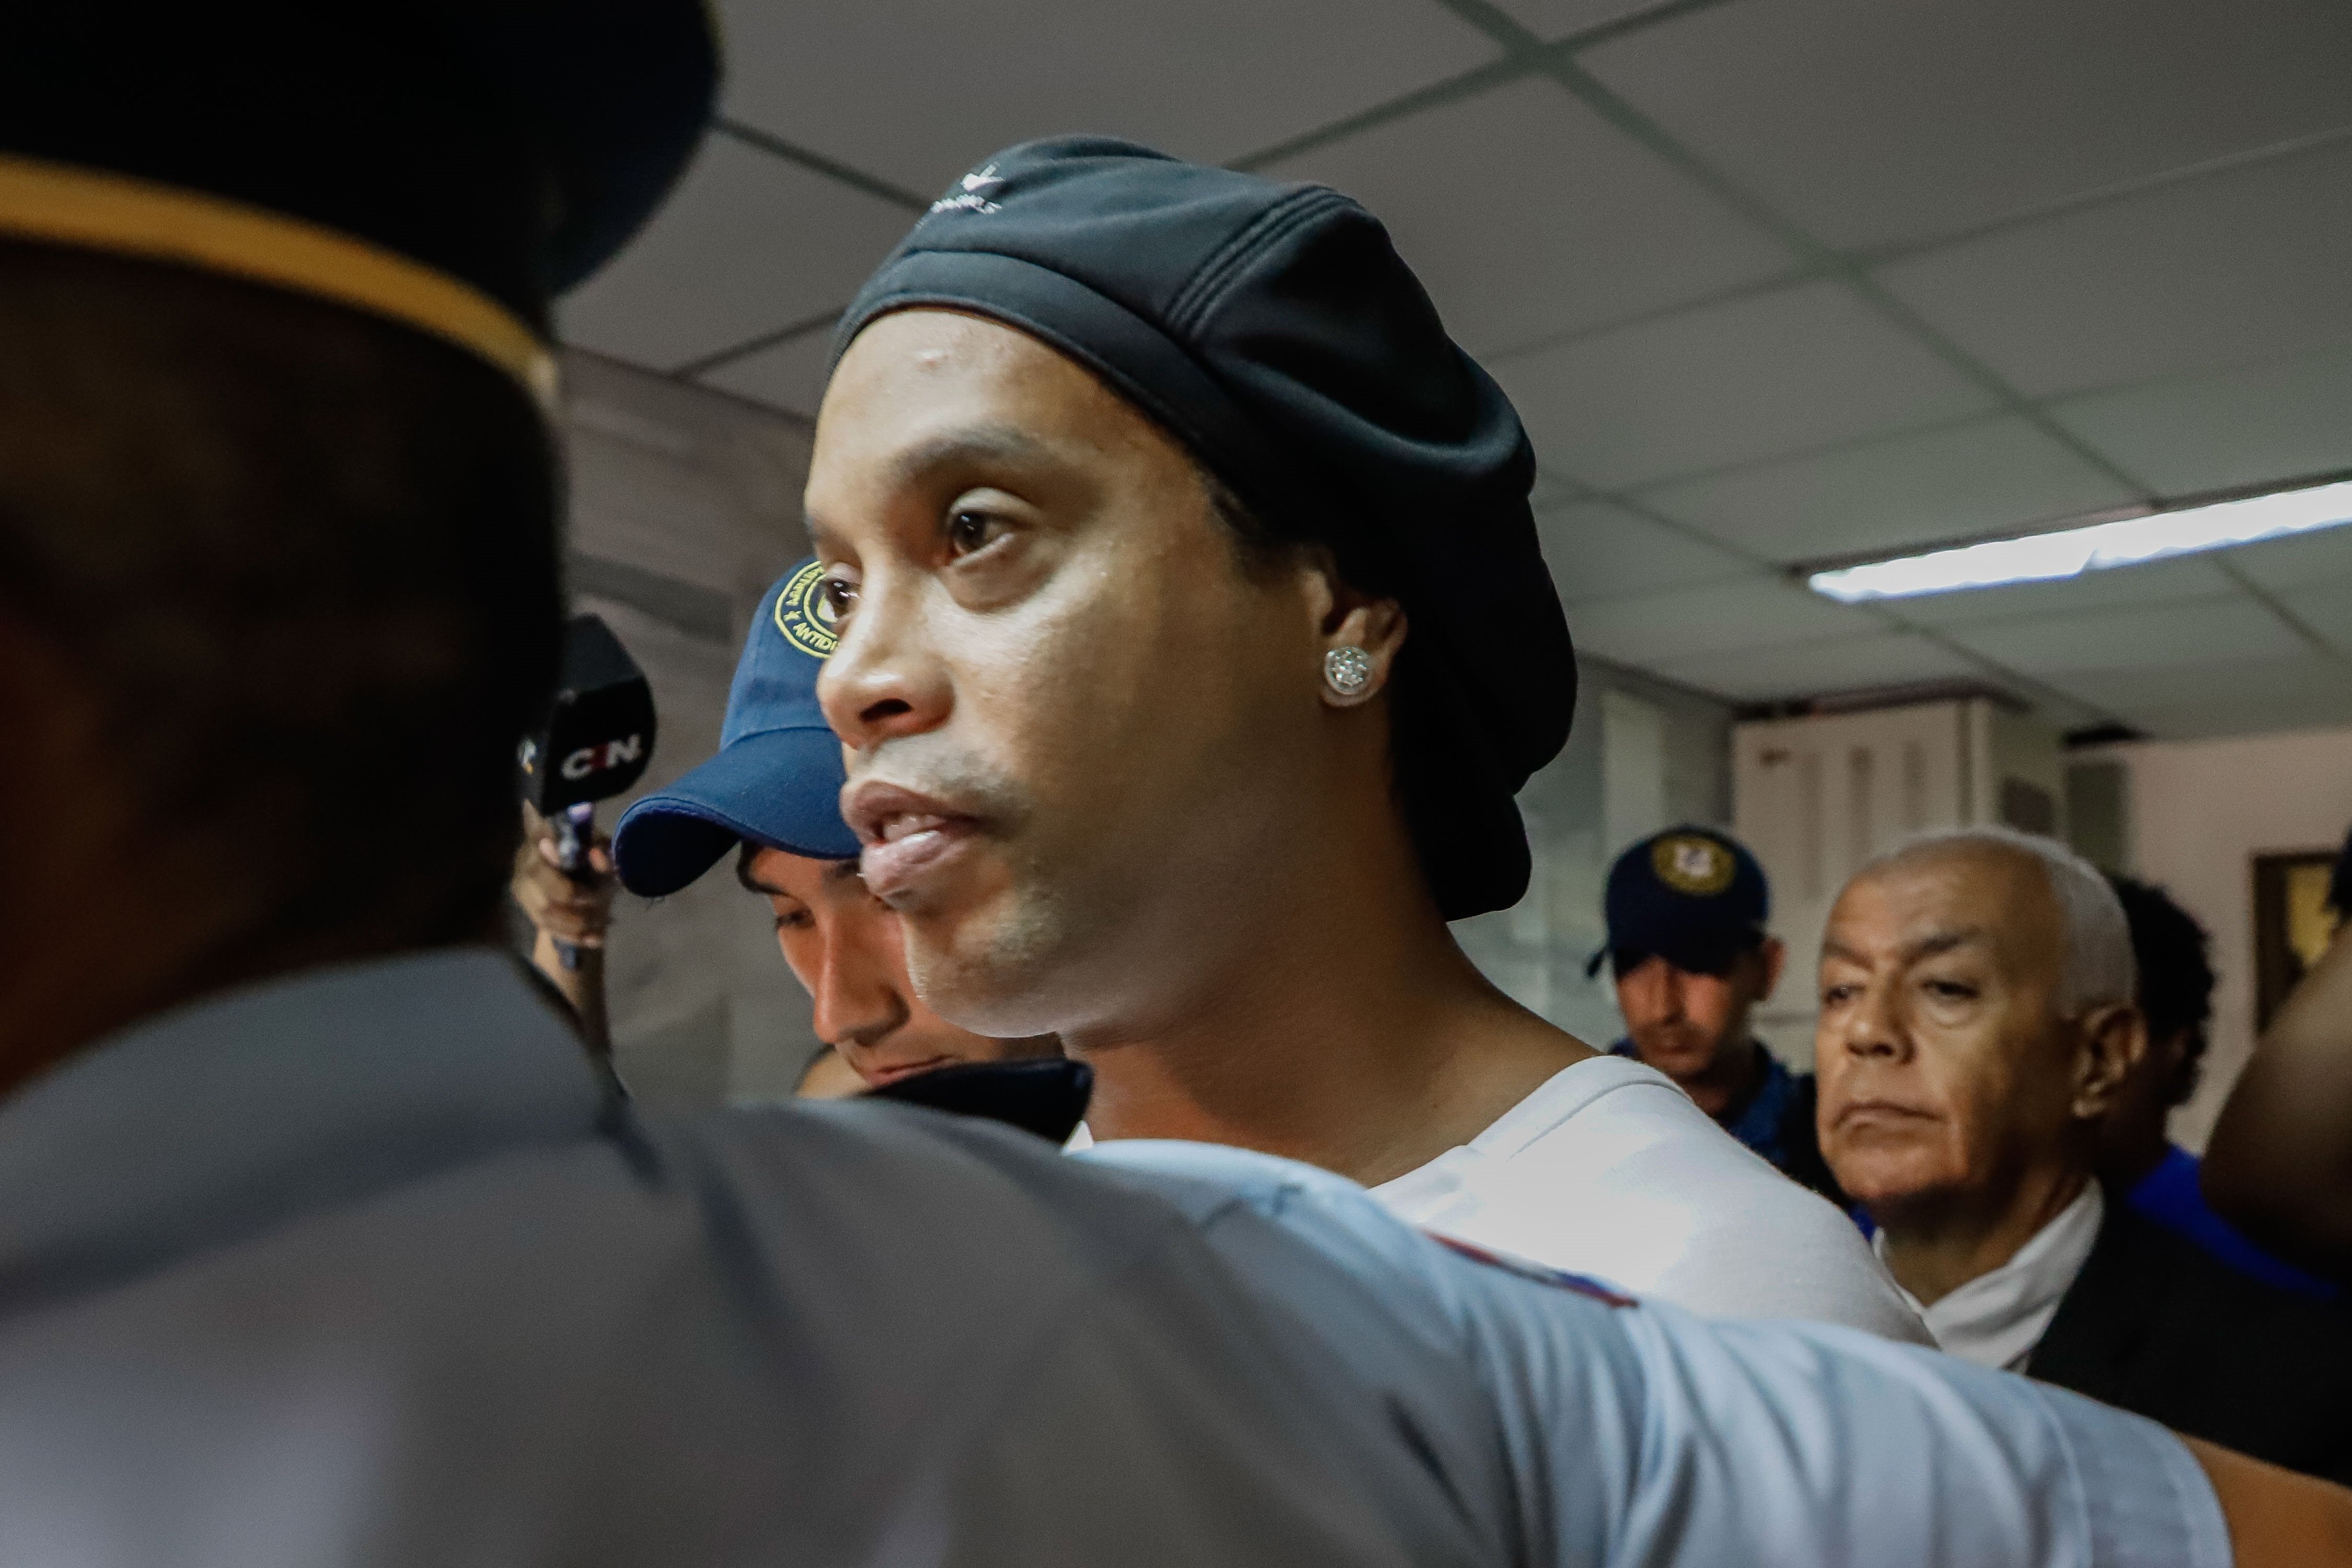 Ronaldinho és titllat de "tonto" pel seu propi advocat